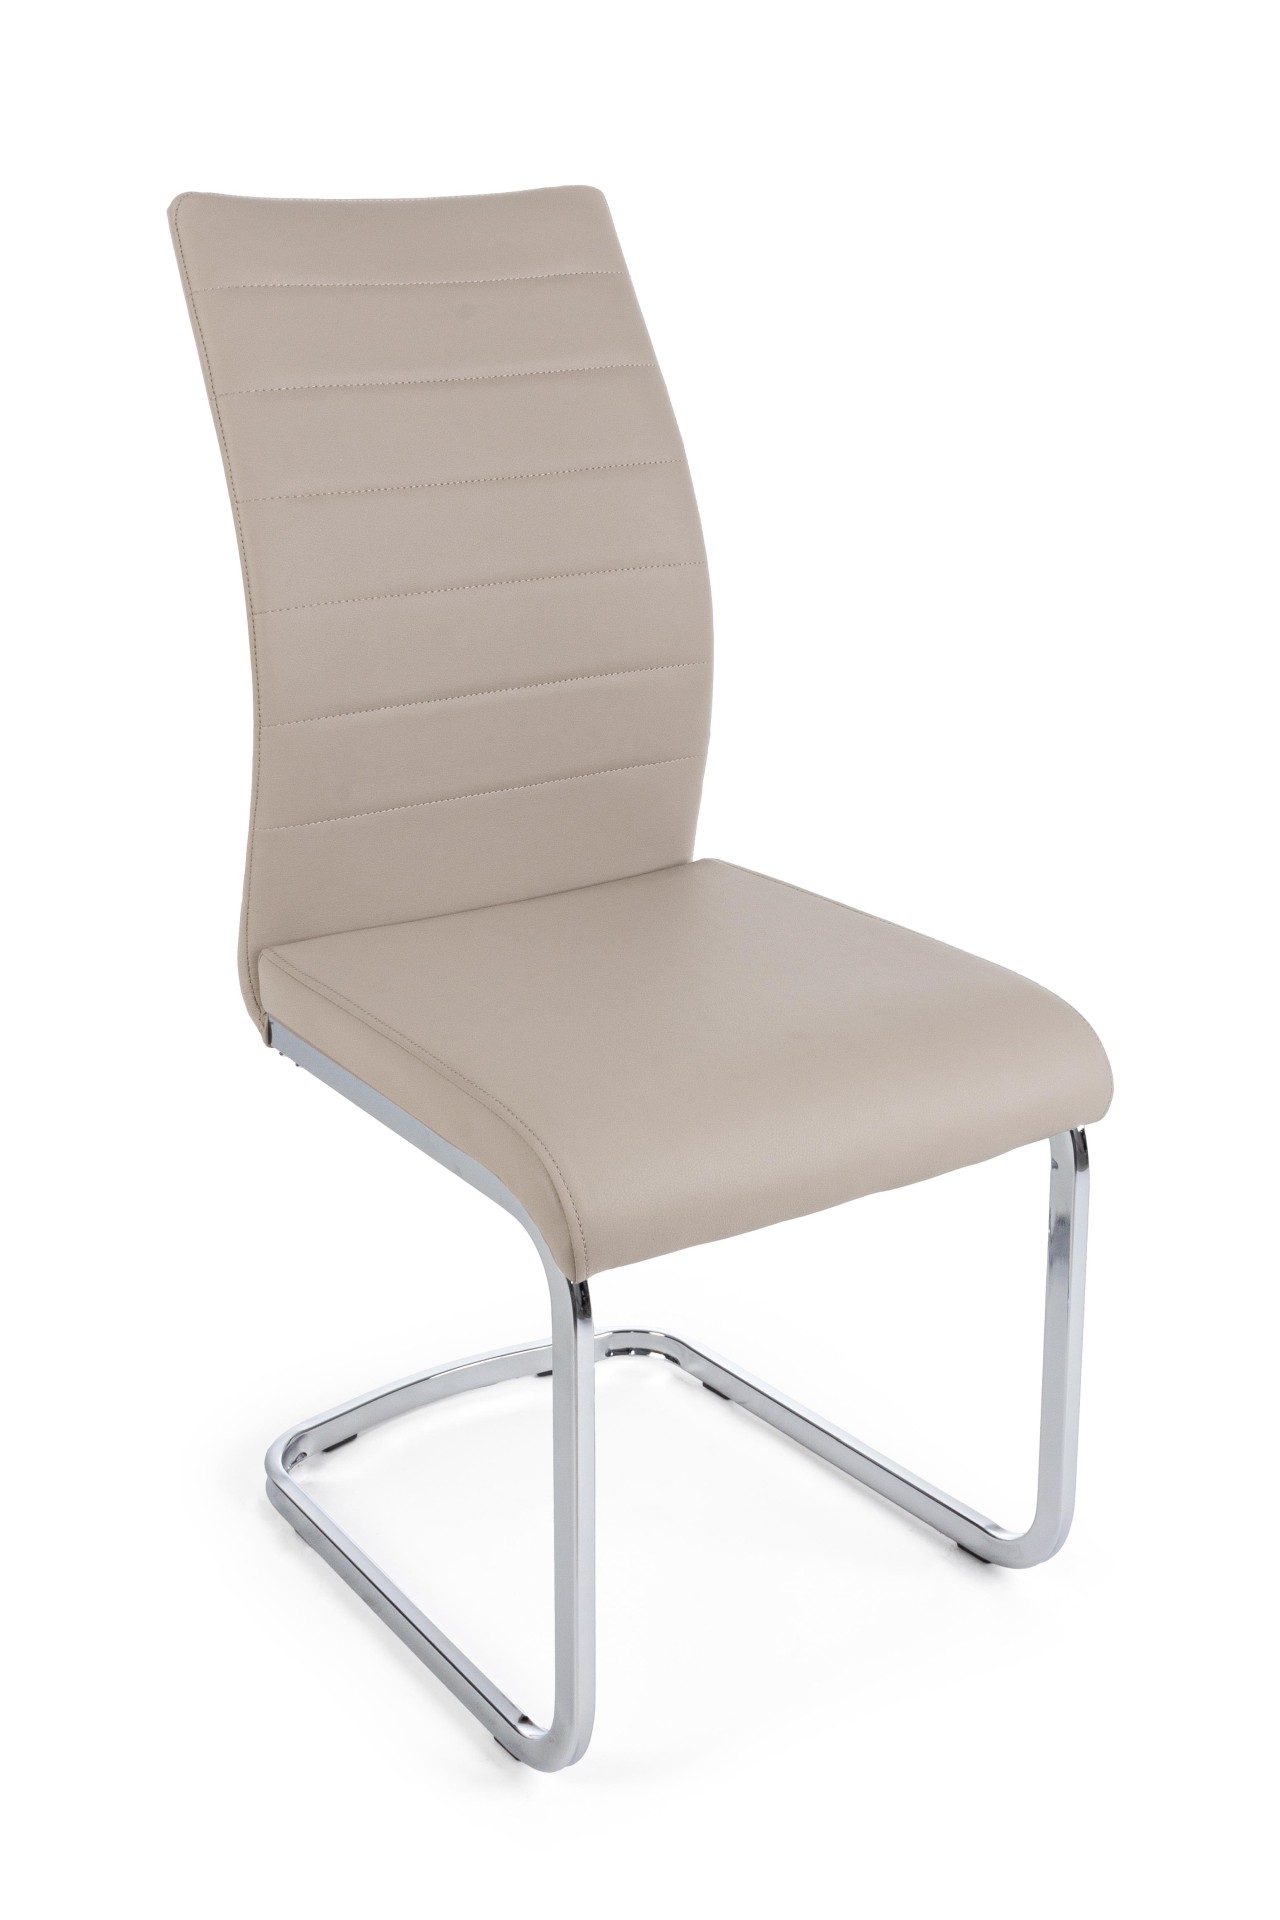 Der Stuhl Mayra überzeugt mit seinem modernem Design. Gefertigt wurde der Stuhl aus einem Kunststoff-Bezug, welcher einen Taupe Farbton besitzt. Das Gestell ist aus Metall, welches eine Silberne Farbe hat. Die Sitzhöhe beträgt 47 cm.